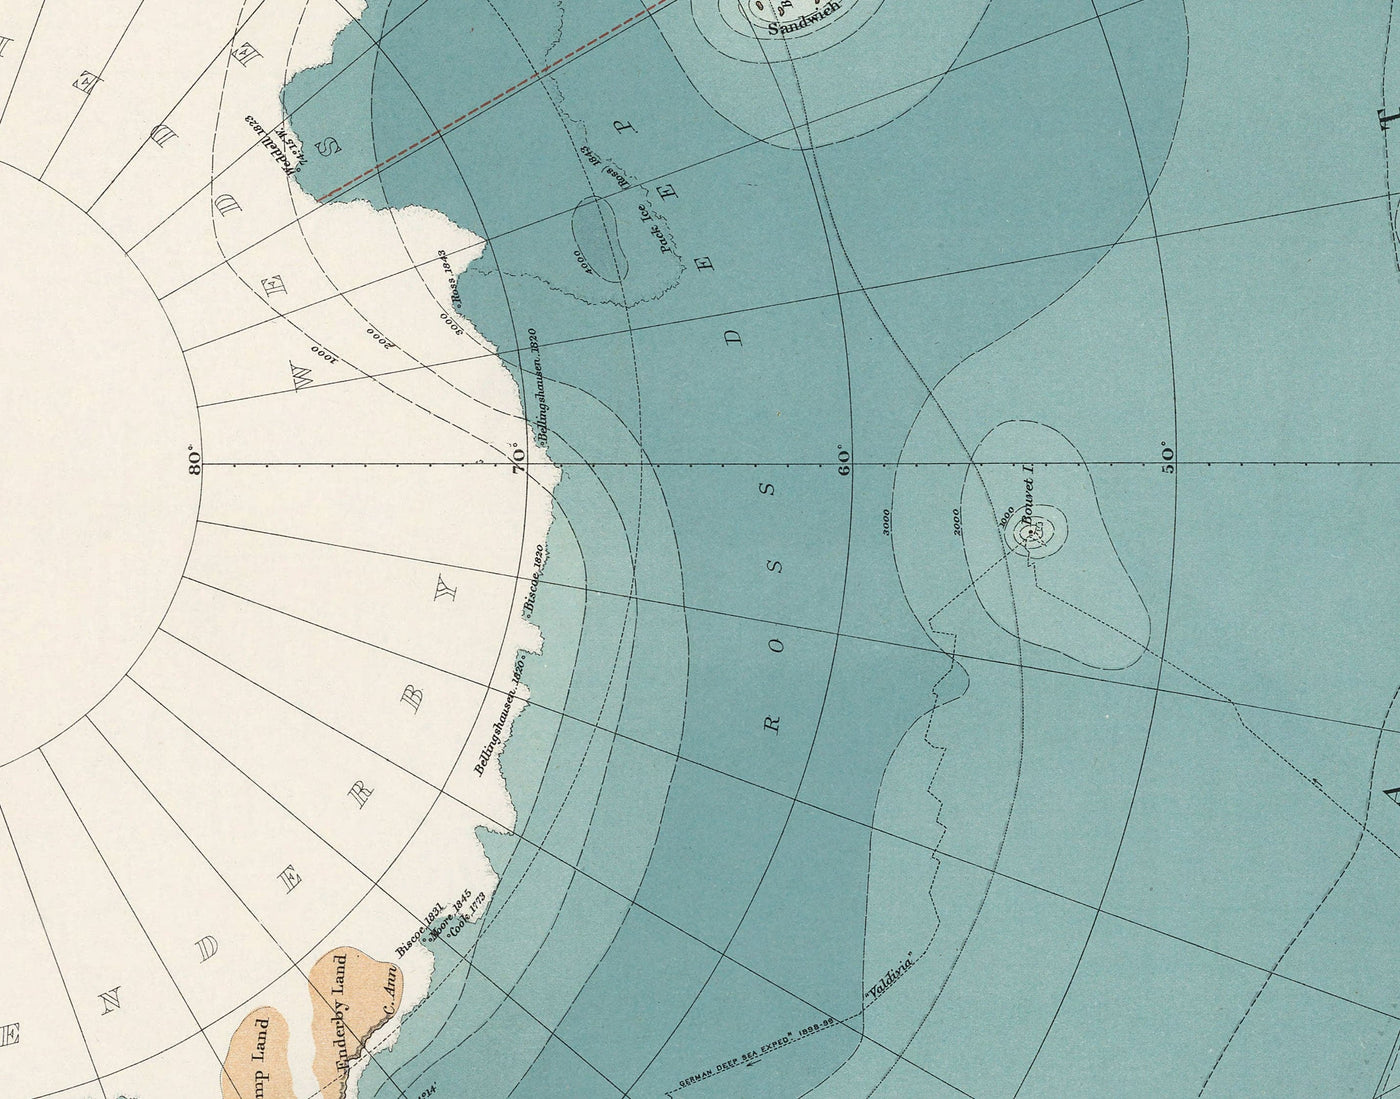 Ancienne Antarctique South Pole Pôle Map 1904 par Stanford - Vintage Atlas Explorer Carte de l'Antarctique